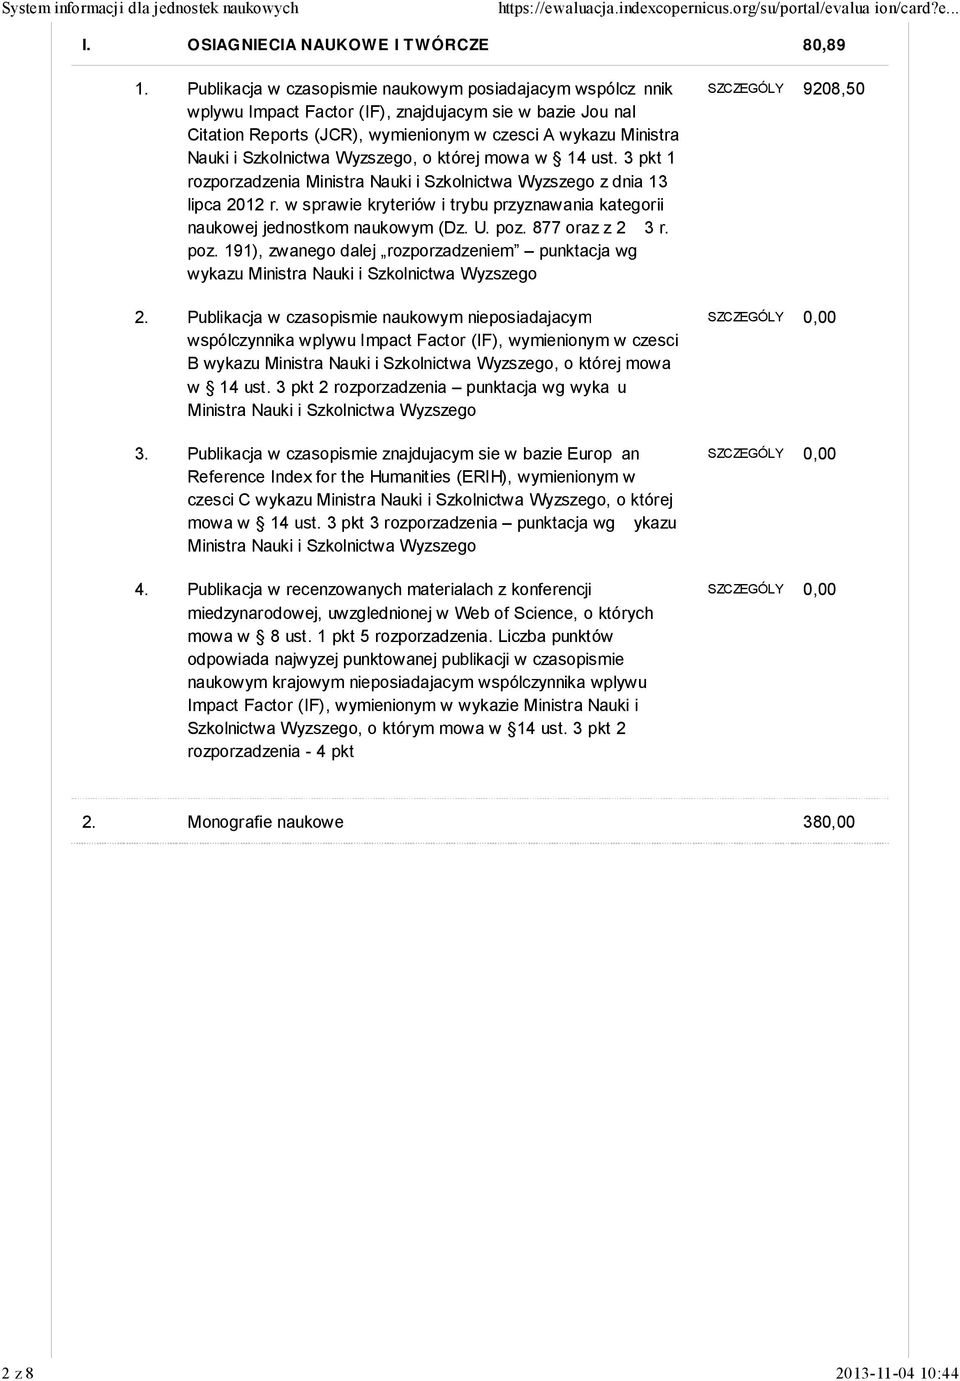 Szkolnictwa Wyzszego, o której mowa w 14 ust. 3 pkt 1 rozporzadzenia Ministra Nauki i Szkolnictwa Wyzszego z dnia 13 lipca 2012 r.